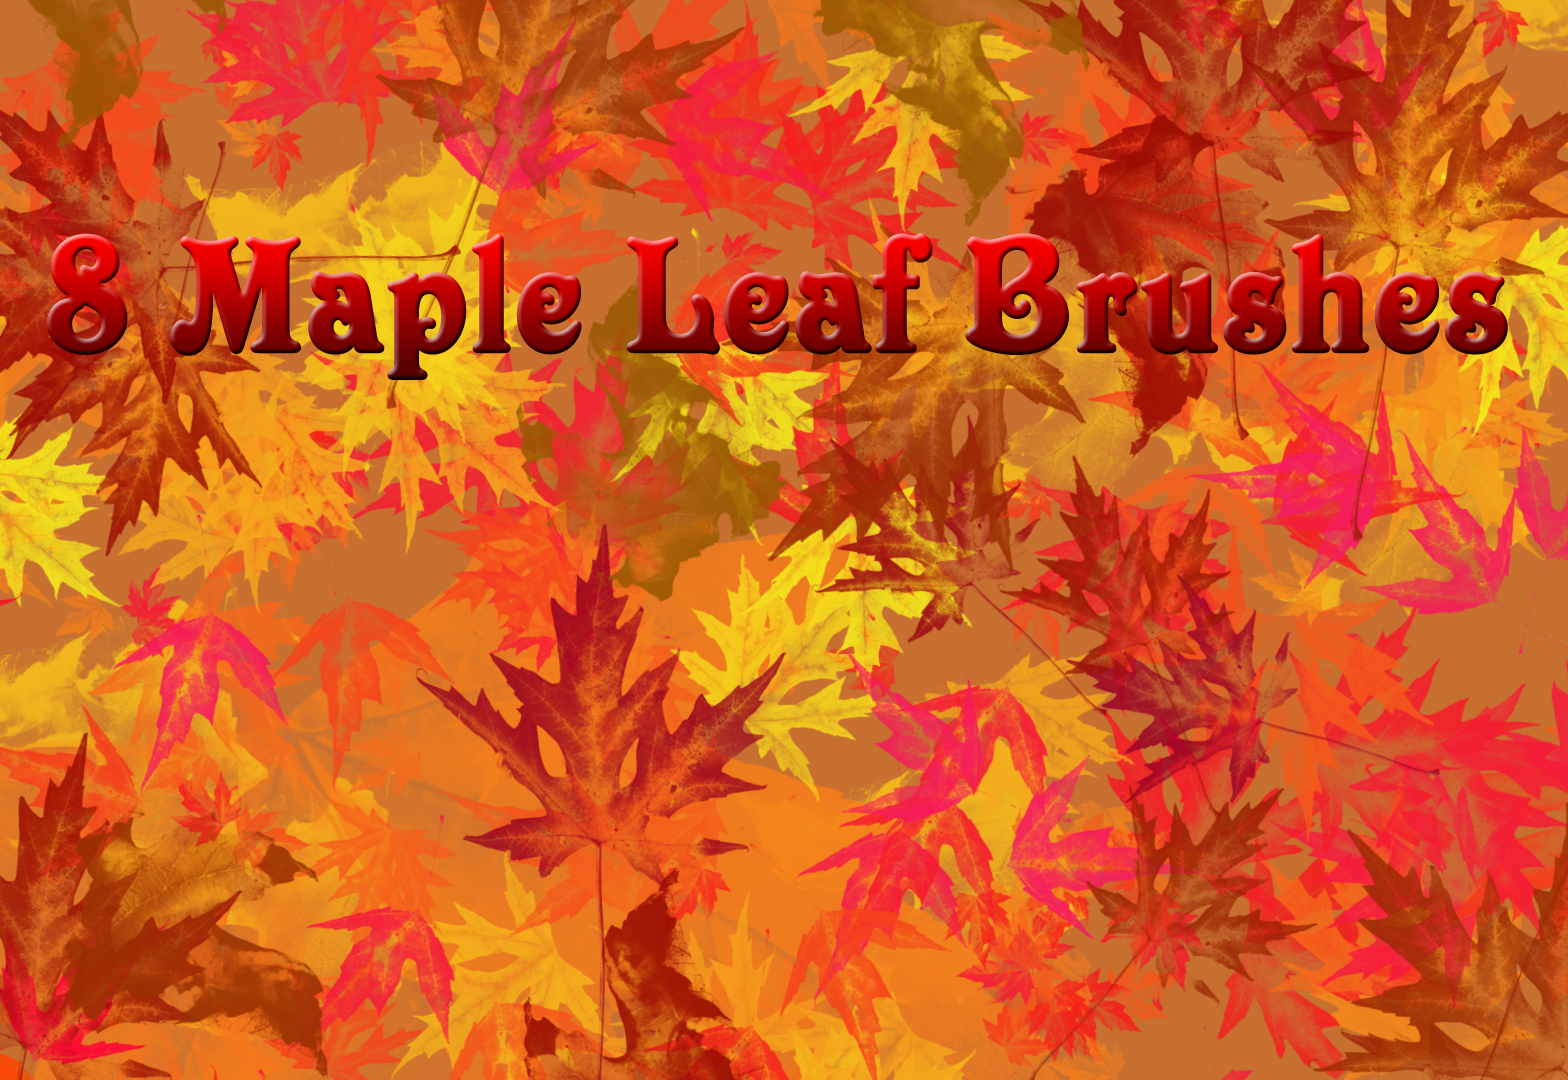 8 Large Maple Leaf Brushes